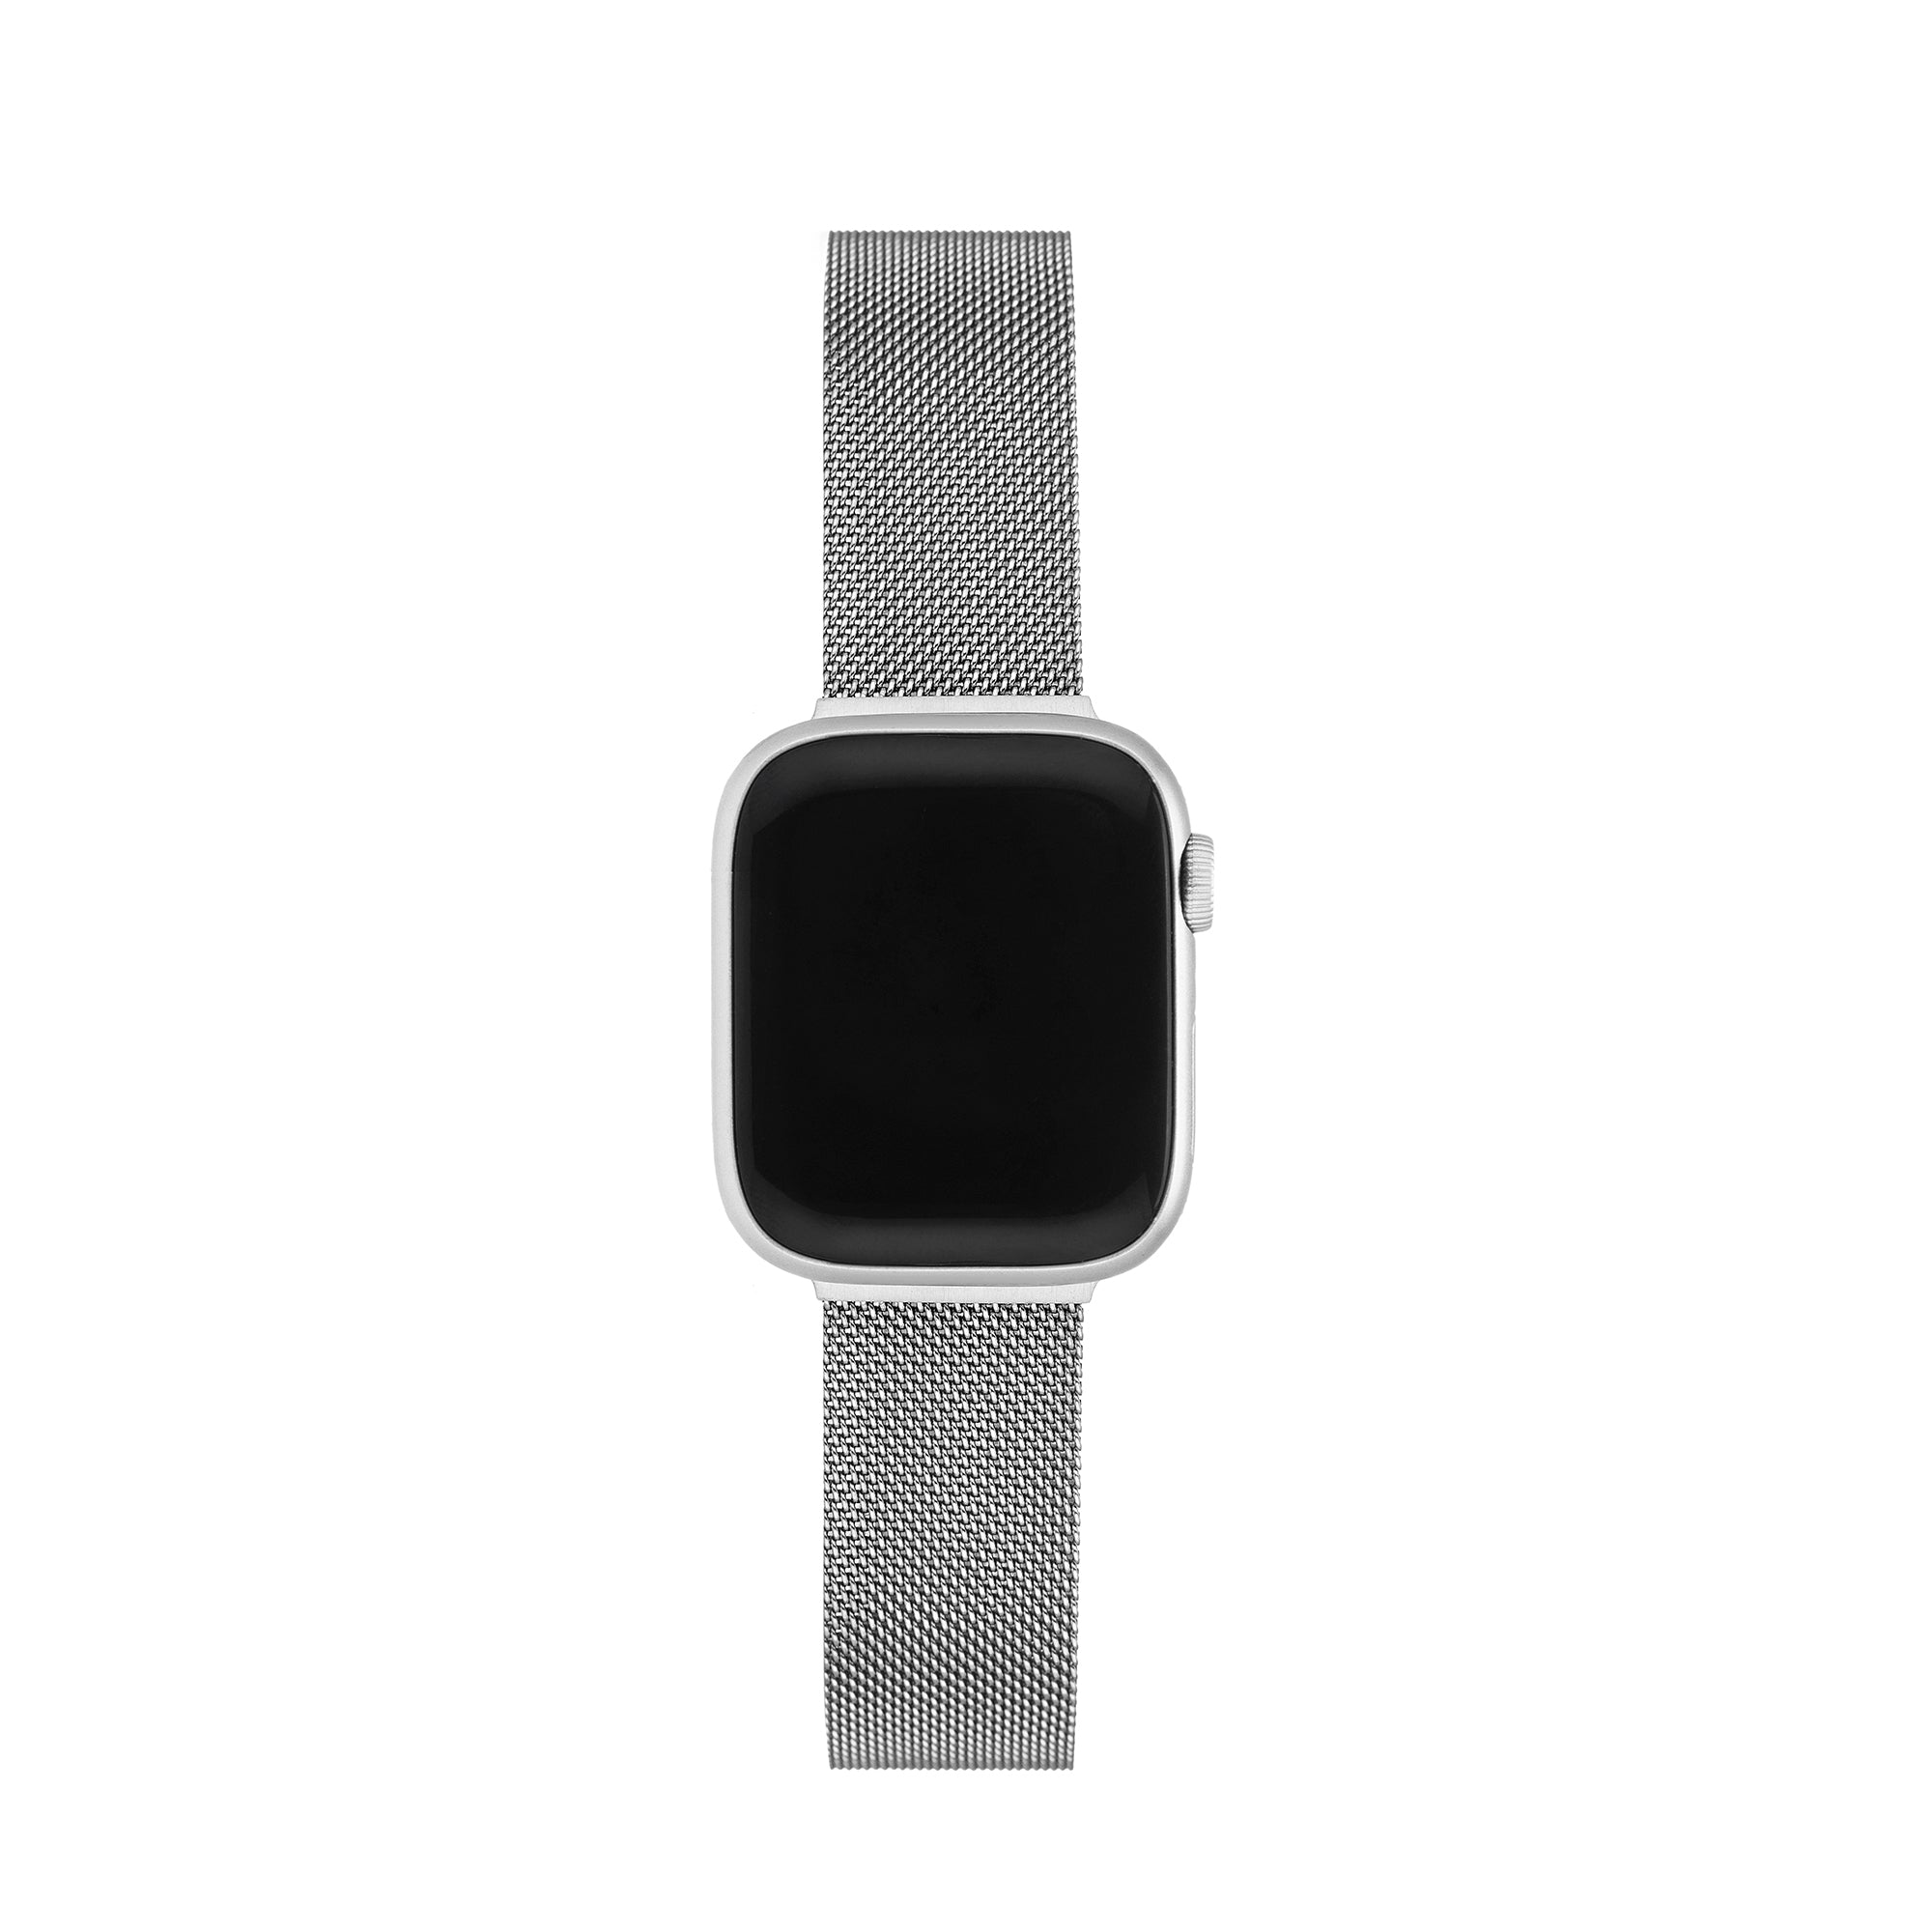 Magnetic Sleek Apple Watch Band